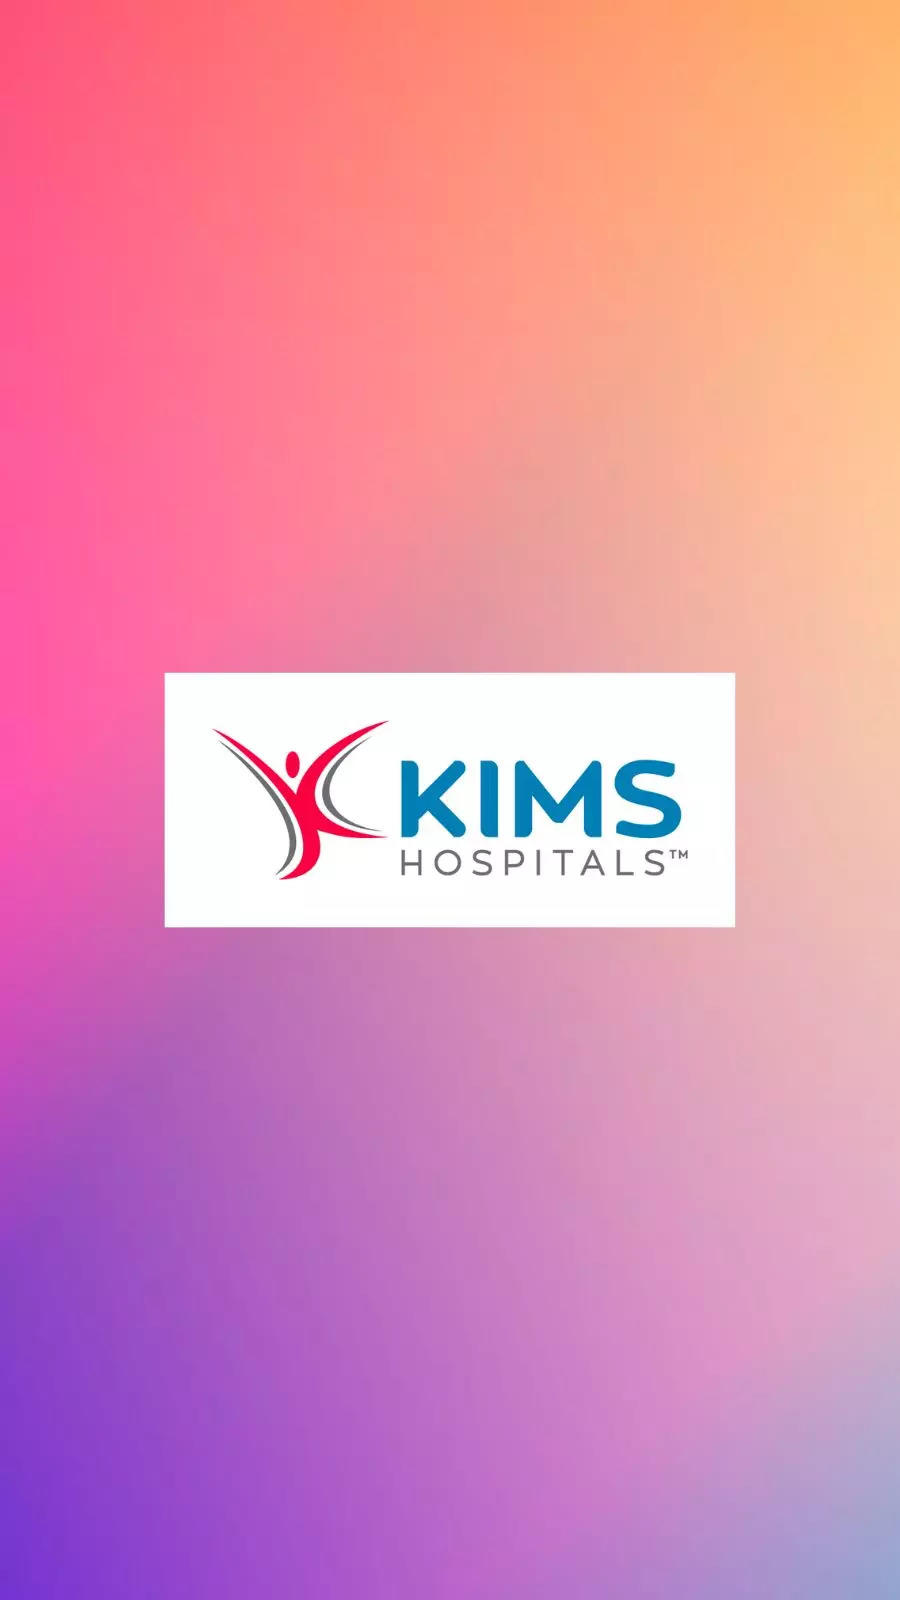 World Asthma Day | KIMS Hospitals - YouTube